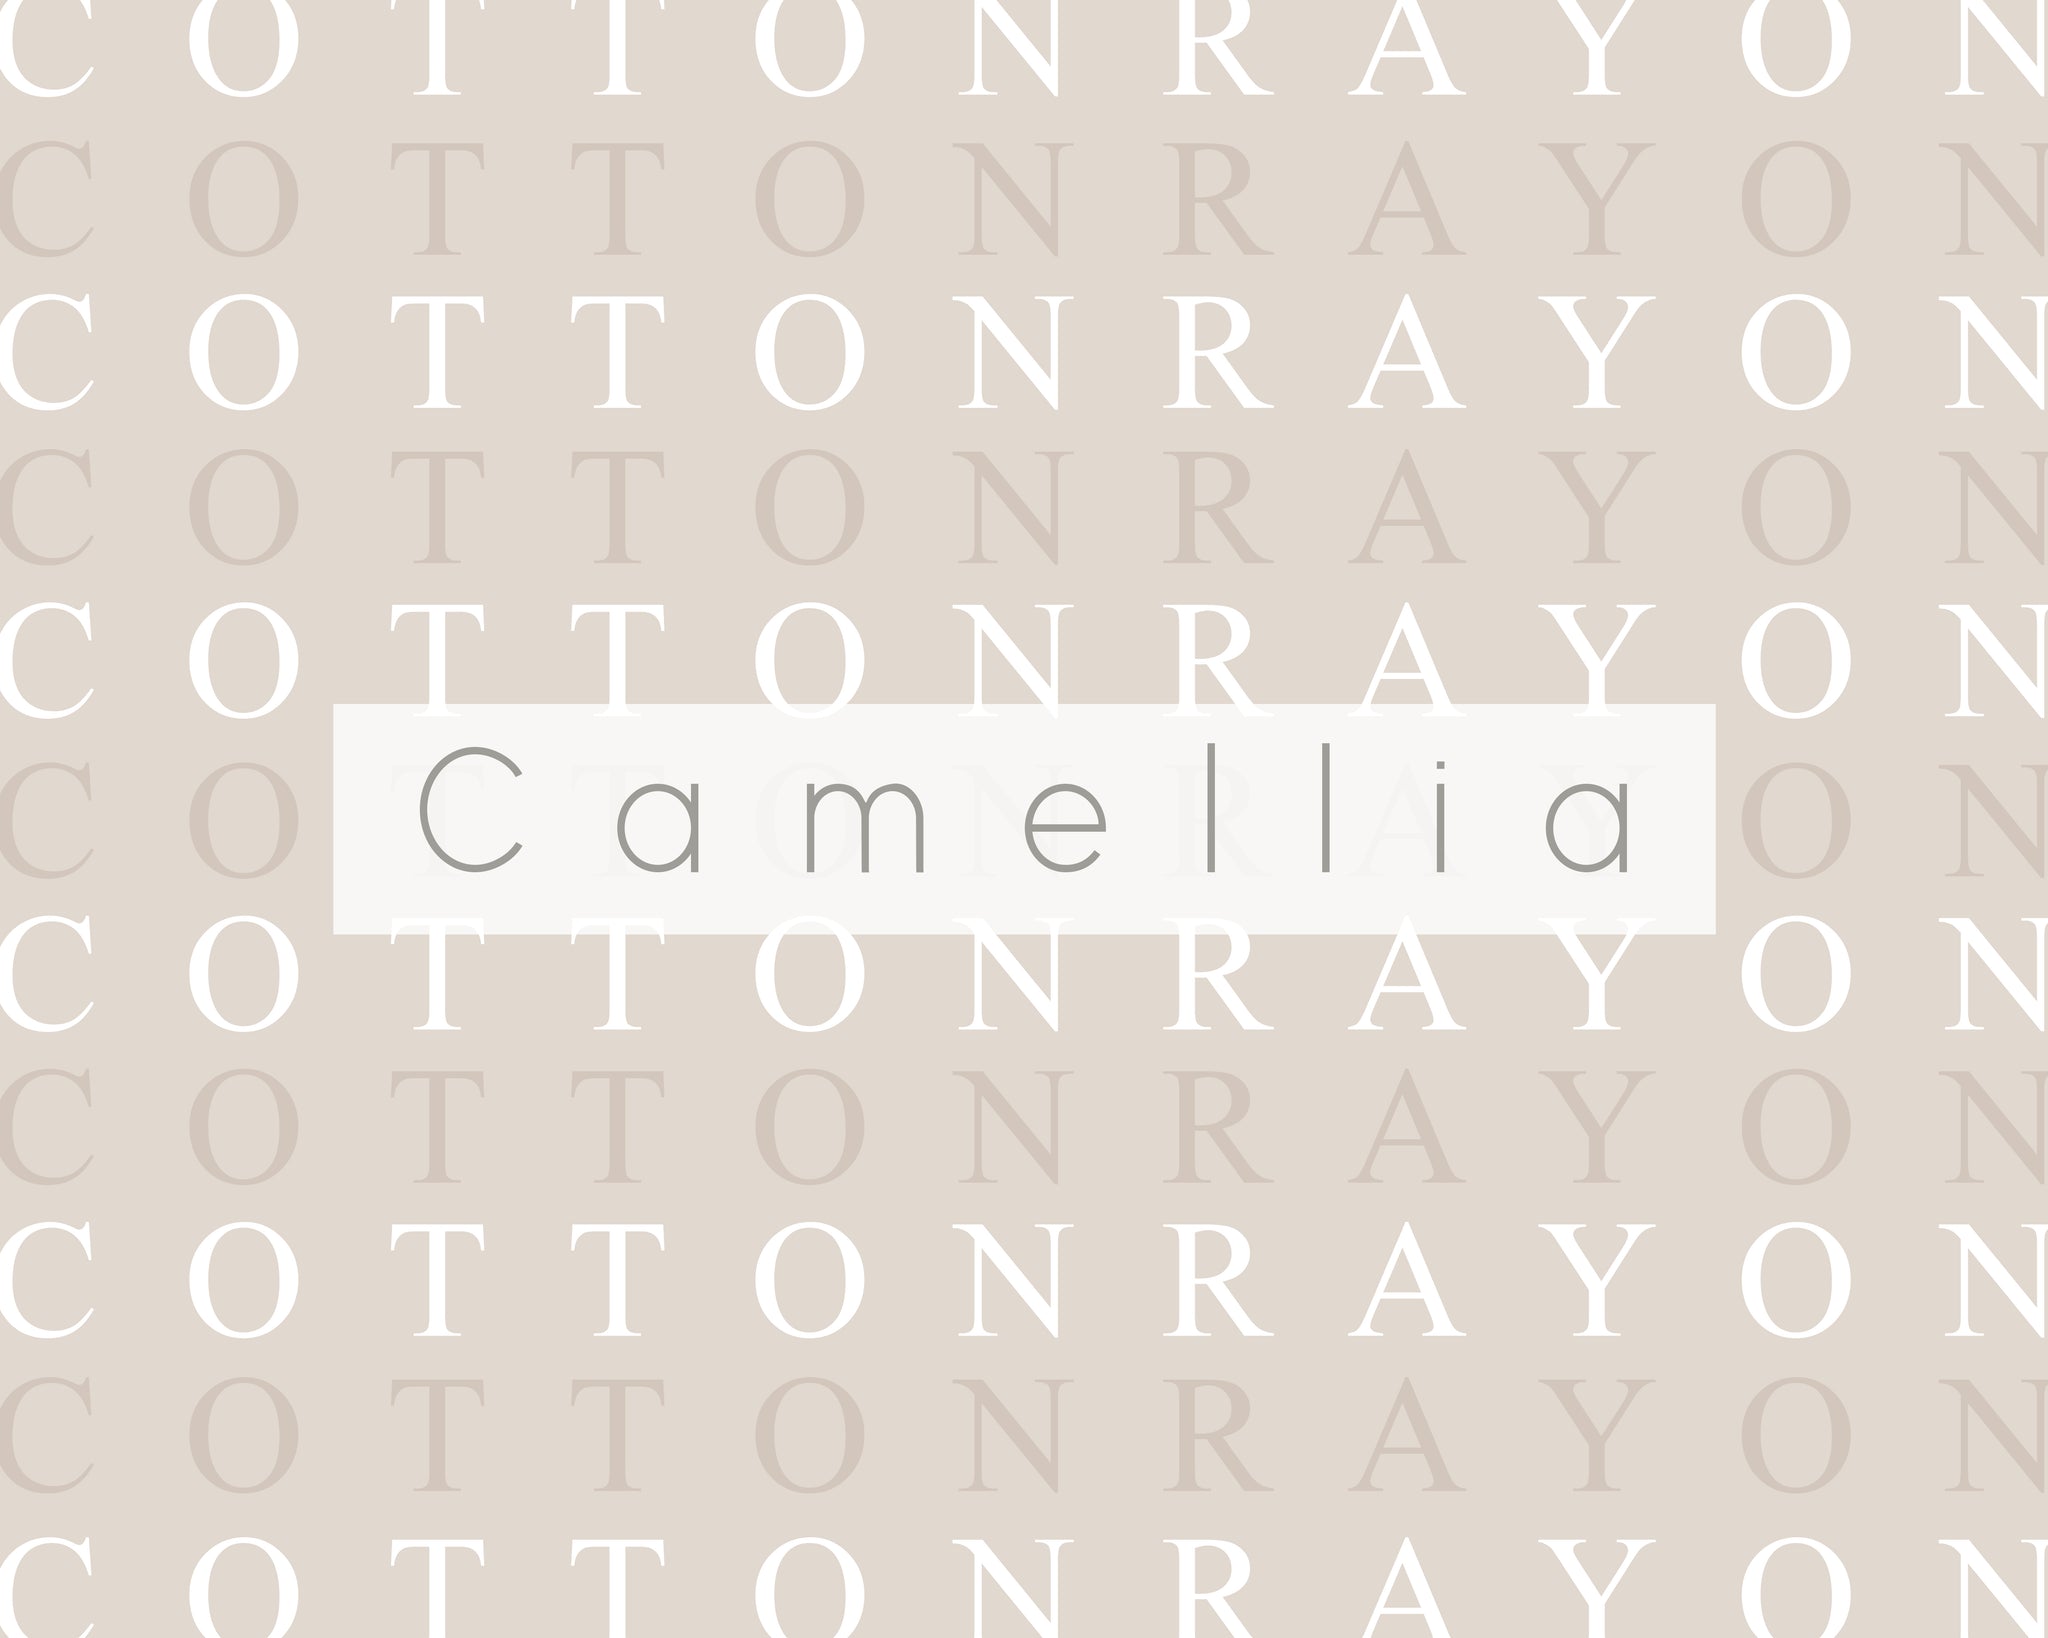 cotton rayon camellia